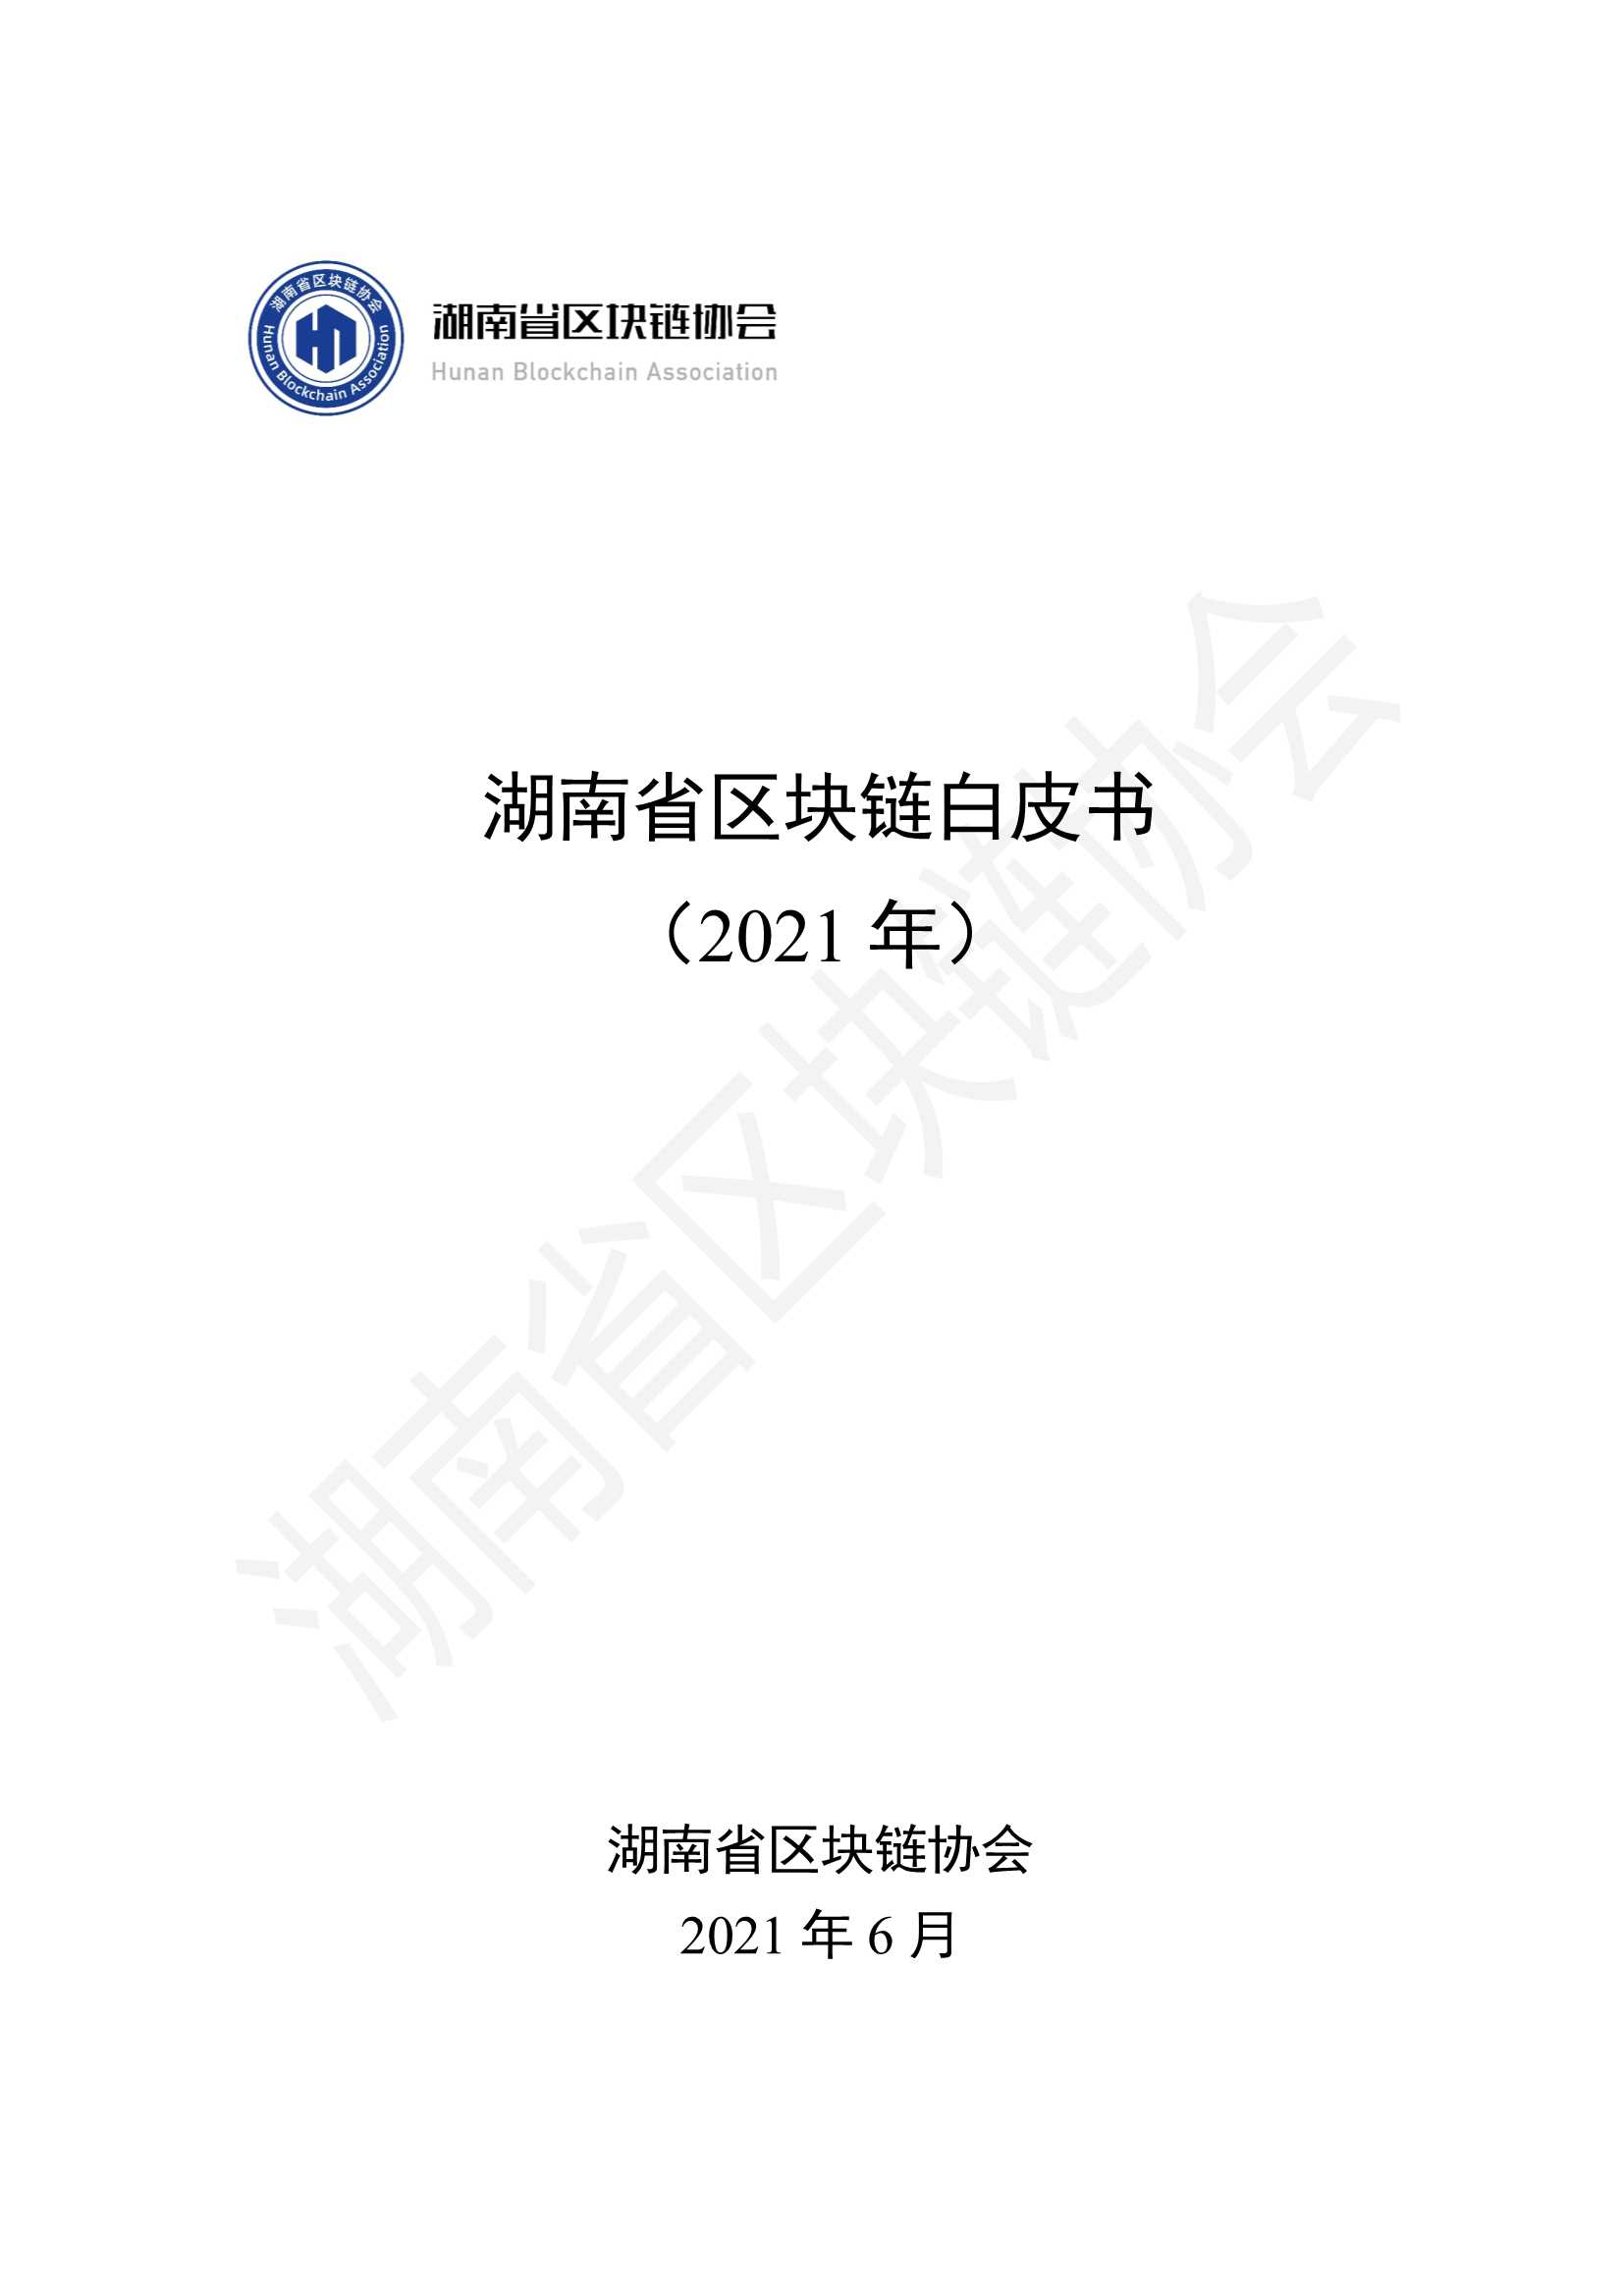 湖南省区块链协会-湖南省区块链白皮书-2021.06-187页